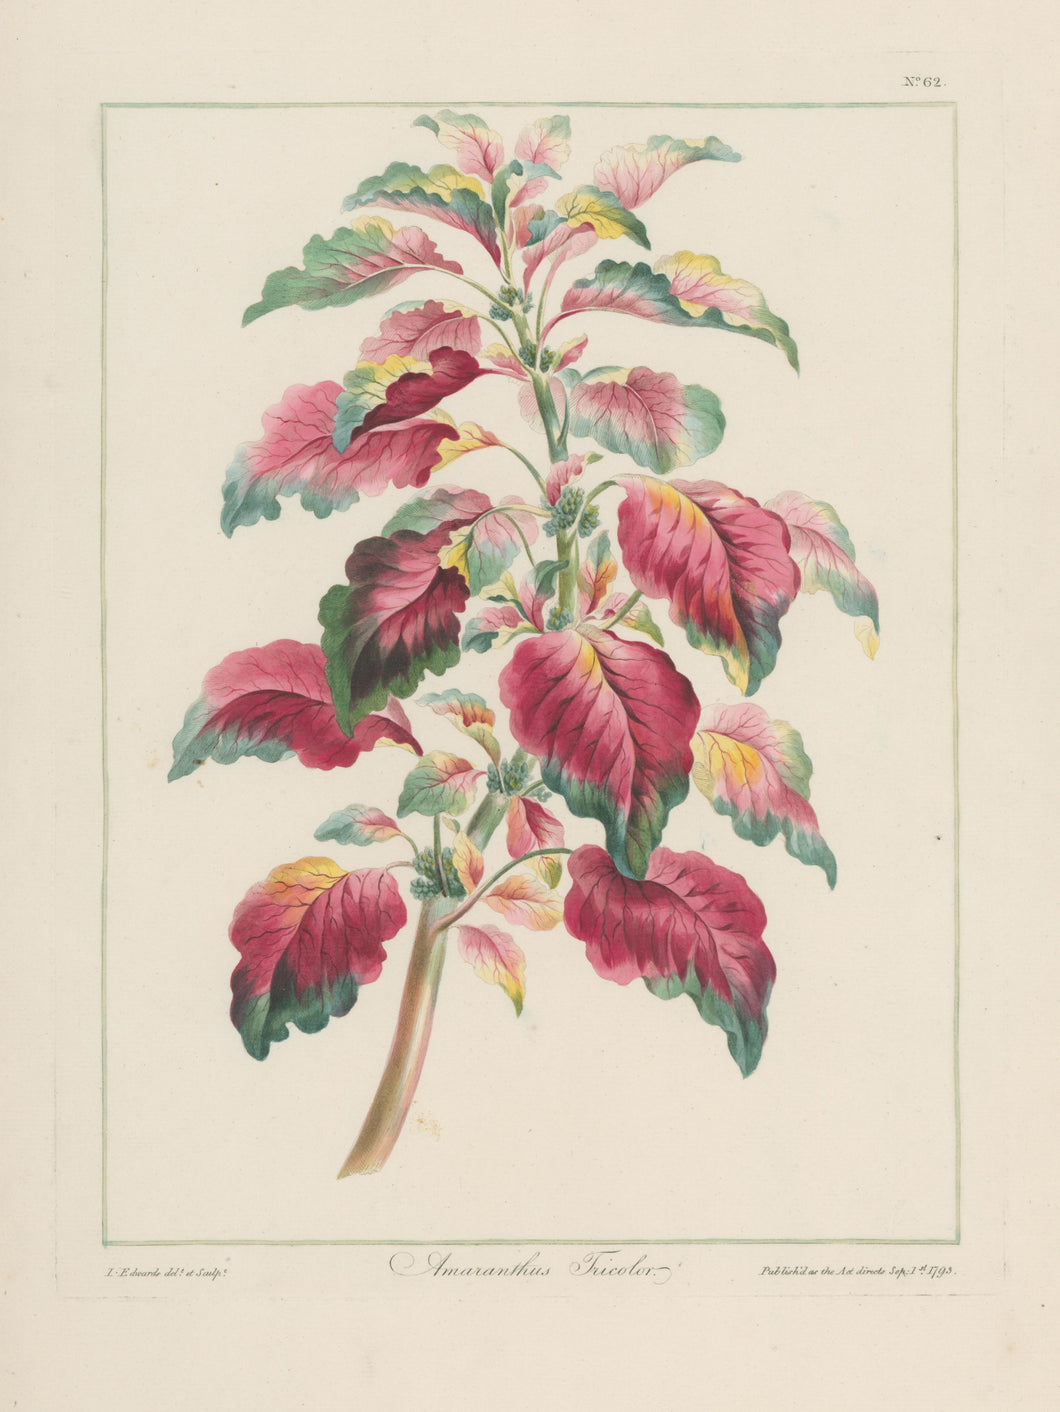 Edwards, John “Amaranthus Tricolor”